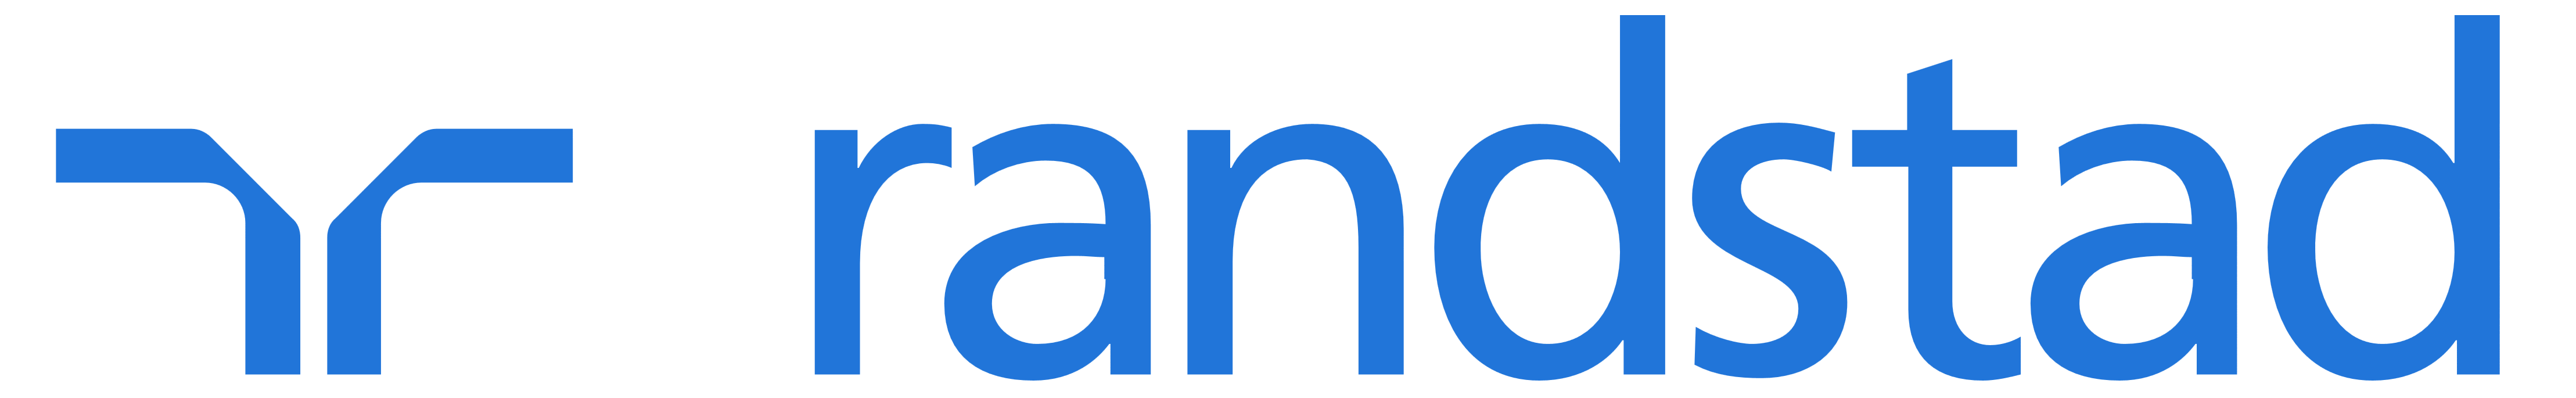 Randstad logo 2